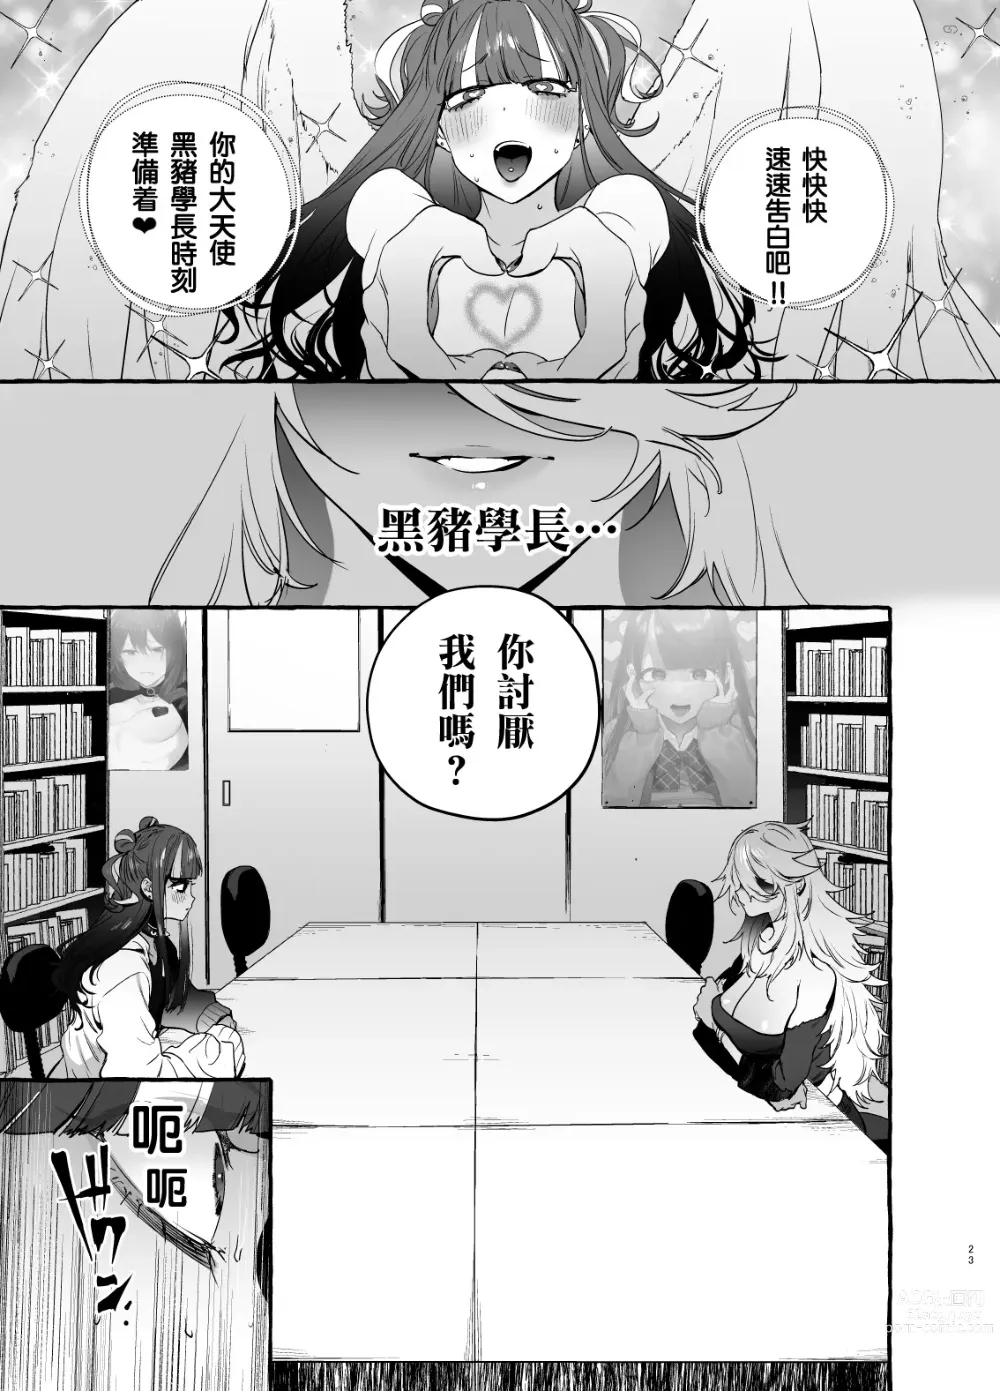 Page 26 of doujinshi 宅男社团的辣妹VS地雷男